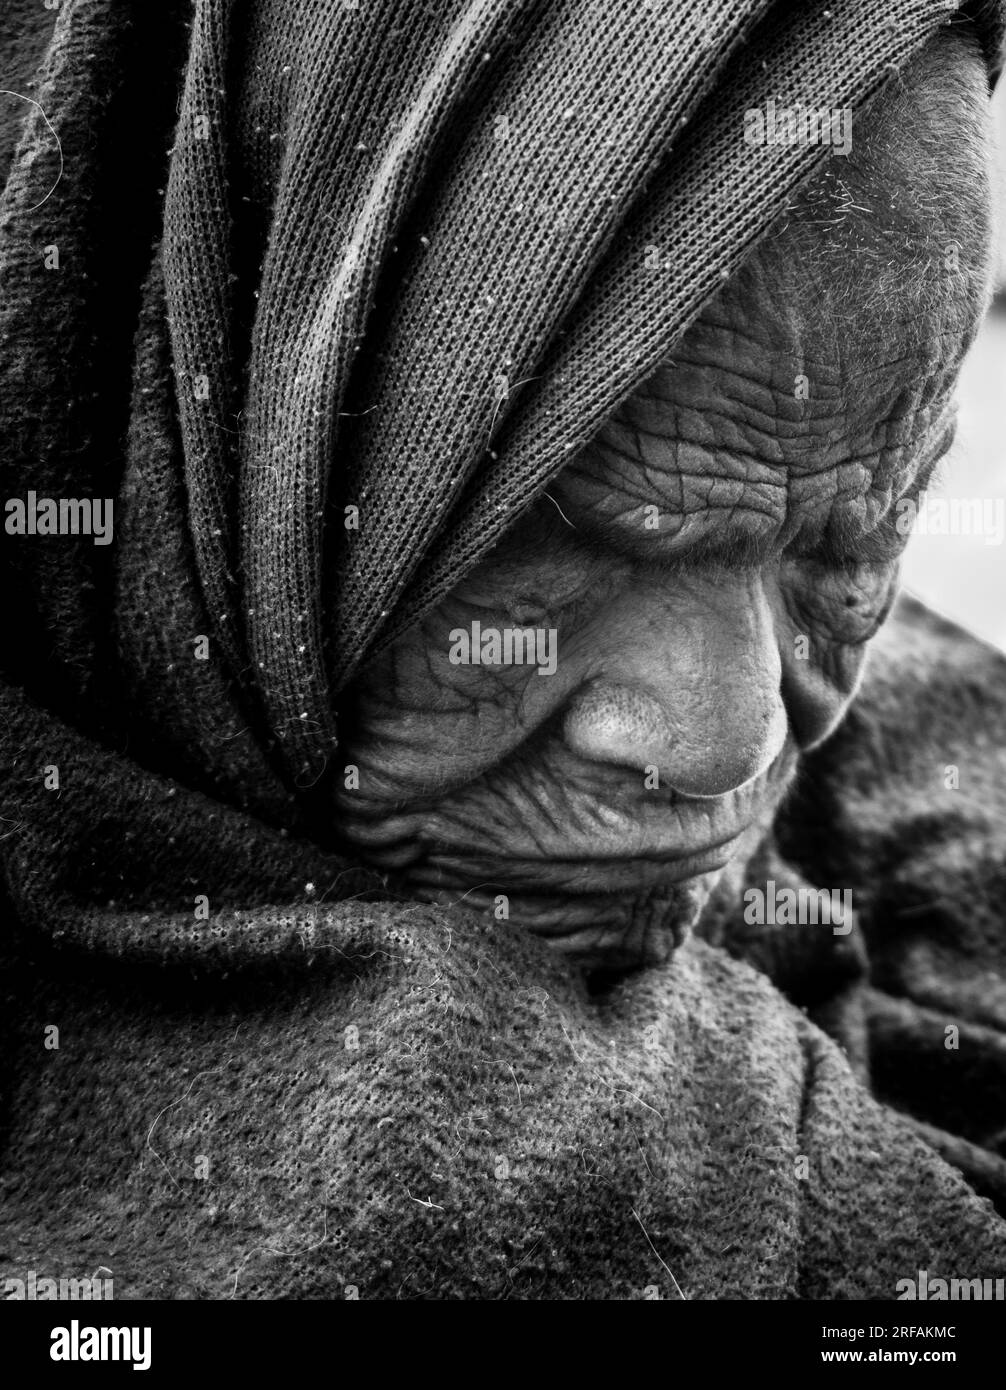 14 octobre 2022 Uttarakhand, Inde. Gros plan monochrome intense du visage ridé d'une femme indienne âgée, les yeux fermés dans une réflexion profonde. Un intemporel Banque D'Images